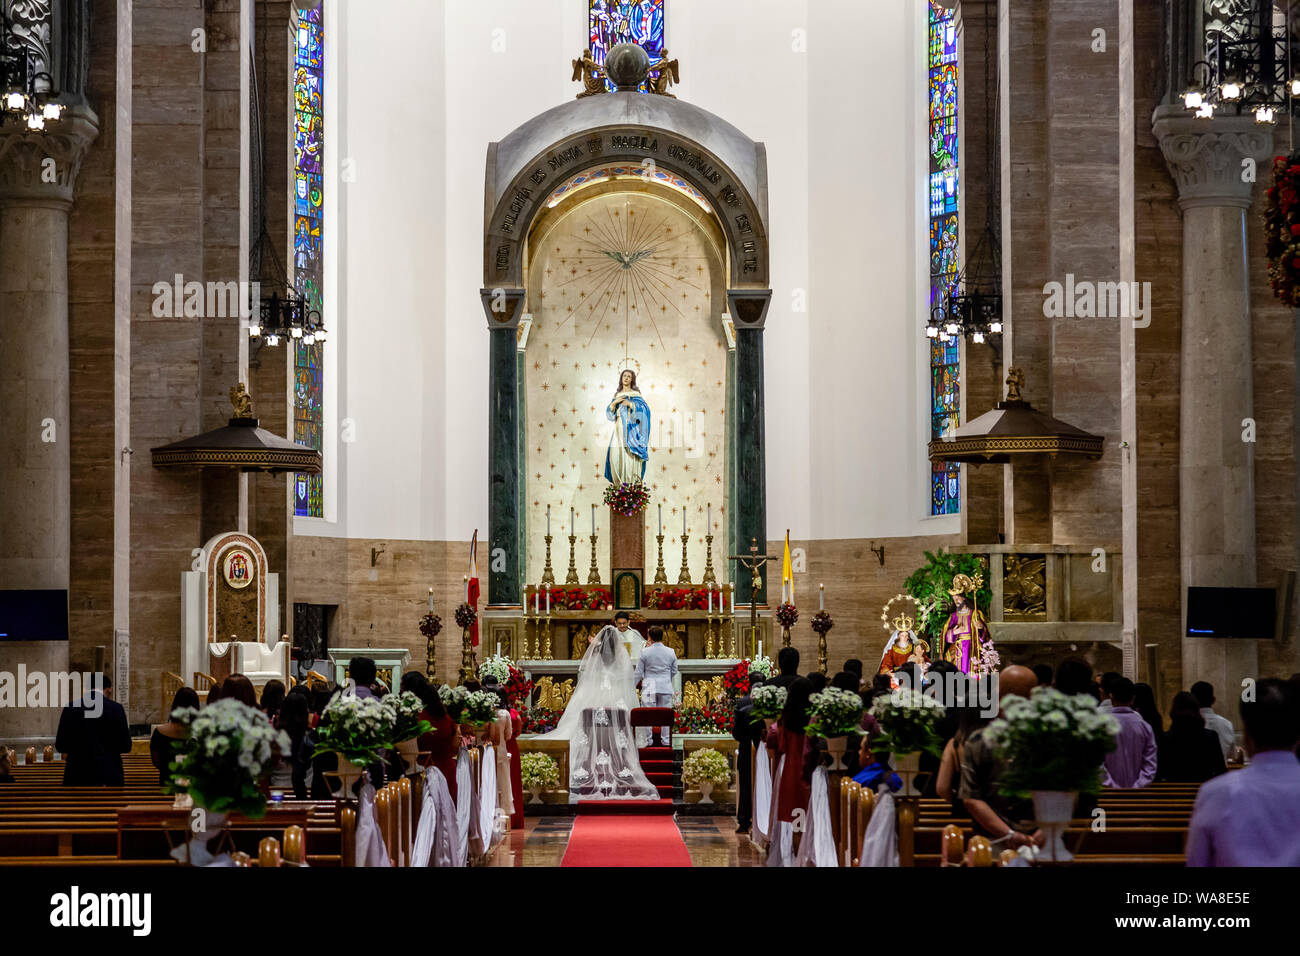 Un service de mariage se déroule à l'intérieur de la cathédrale en Intramuros, Manille, Philippines Banque D'Images